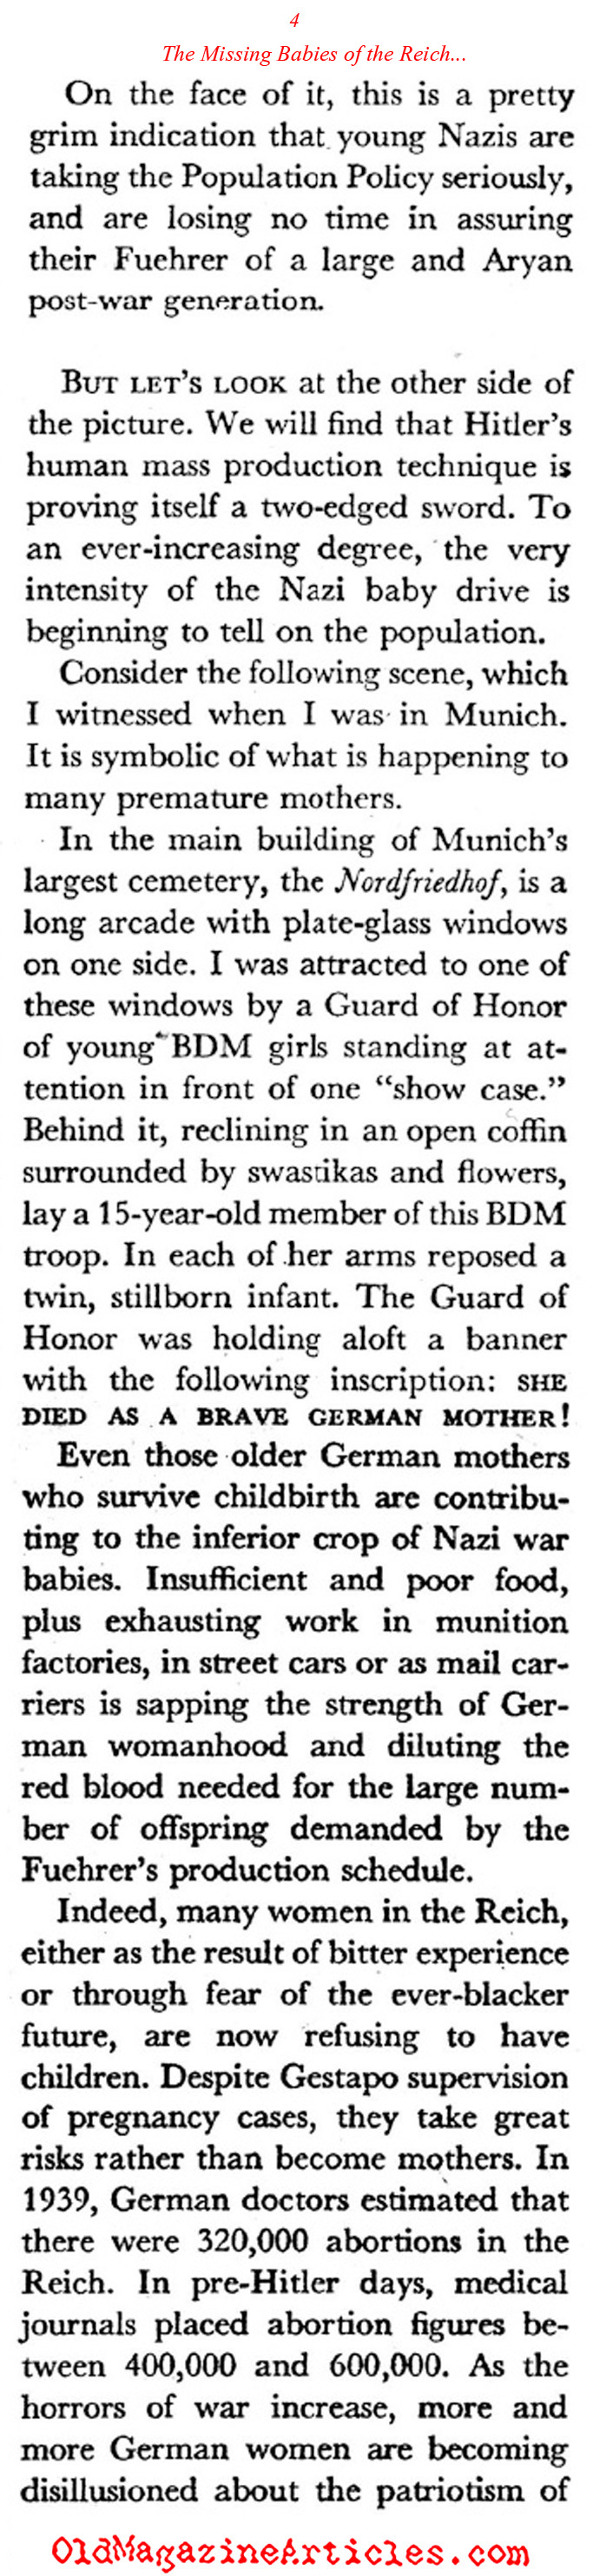 ''Healthy Eroticism'' in the Third Reich (Coronet Magazine, 1942)